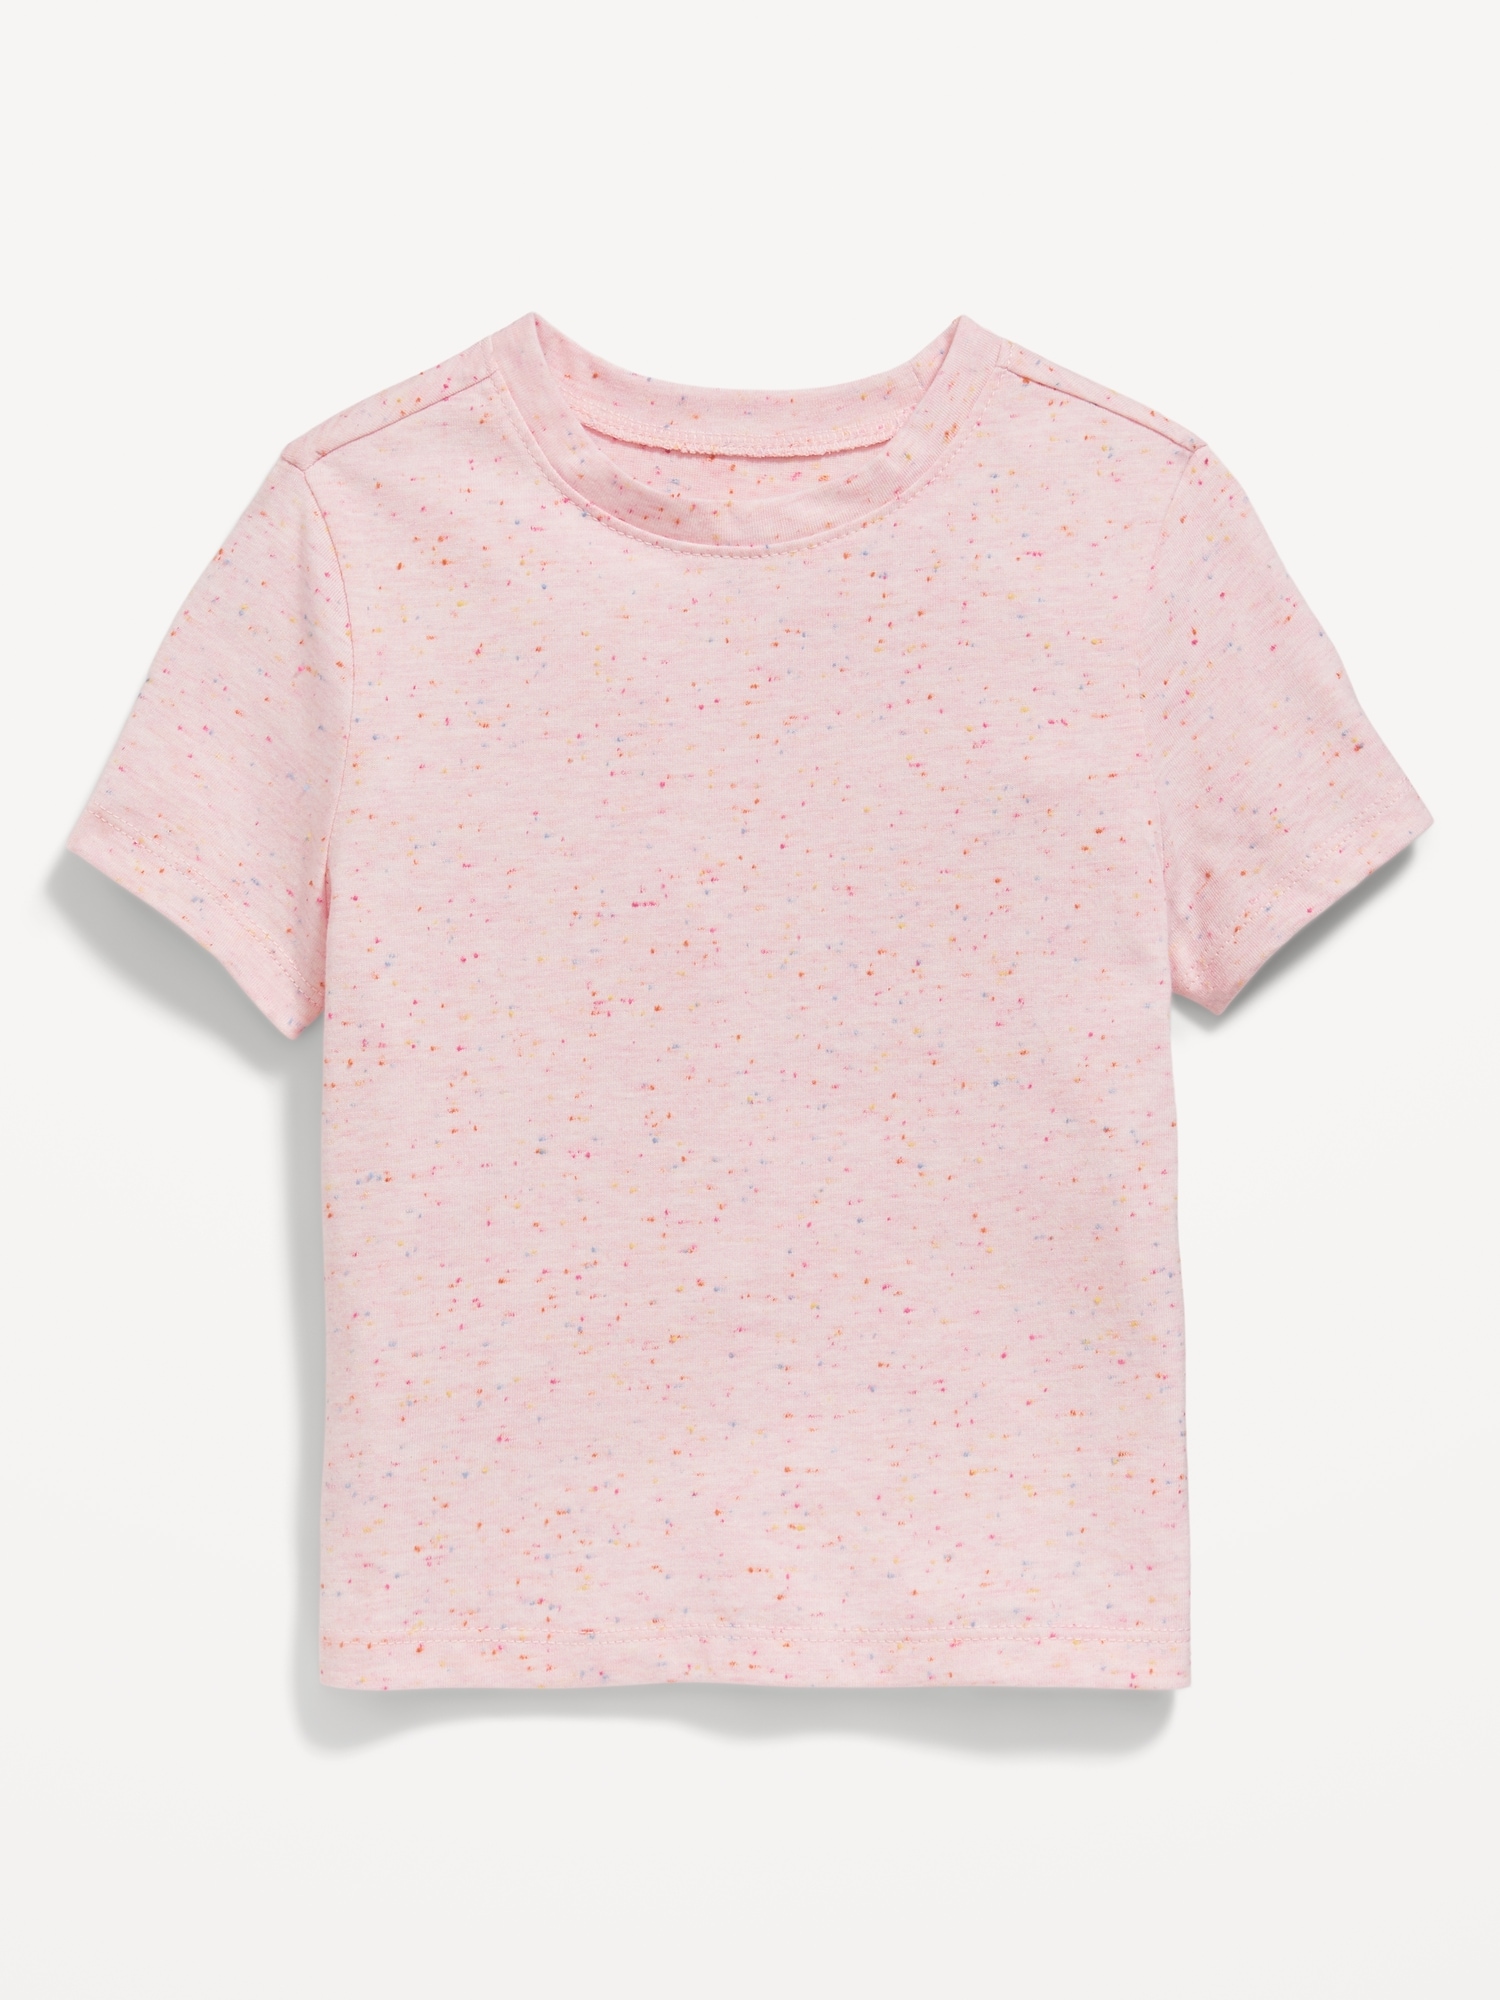 올드네이비 Unisex Short-Sleeve Patterned T-Shirt for Toddler Hot Deal